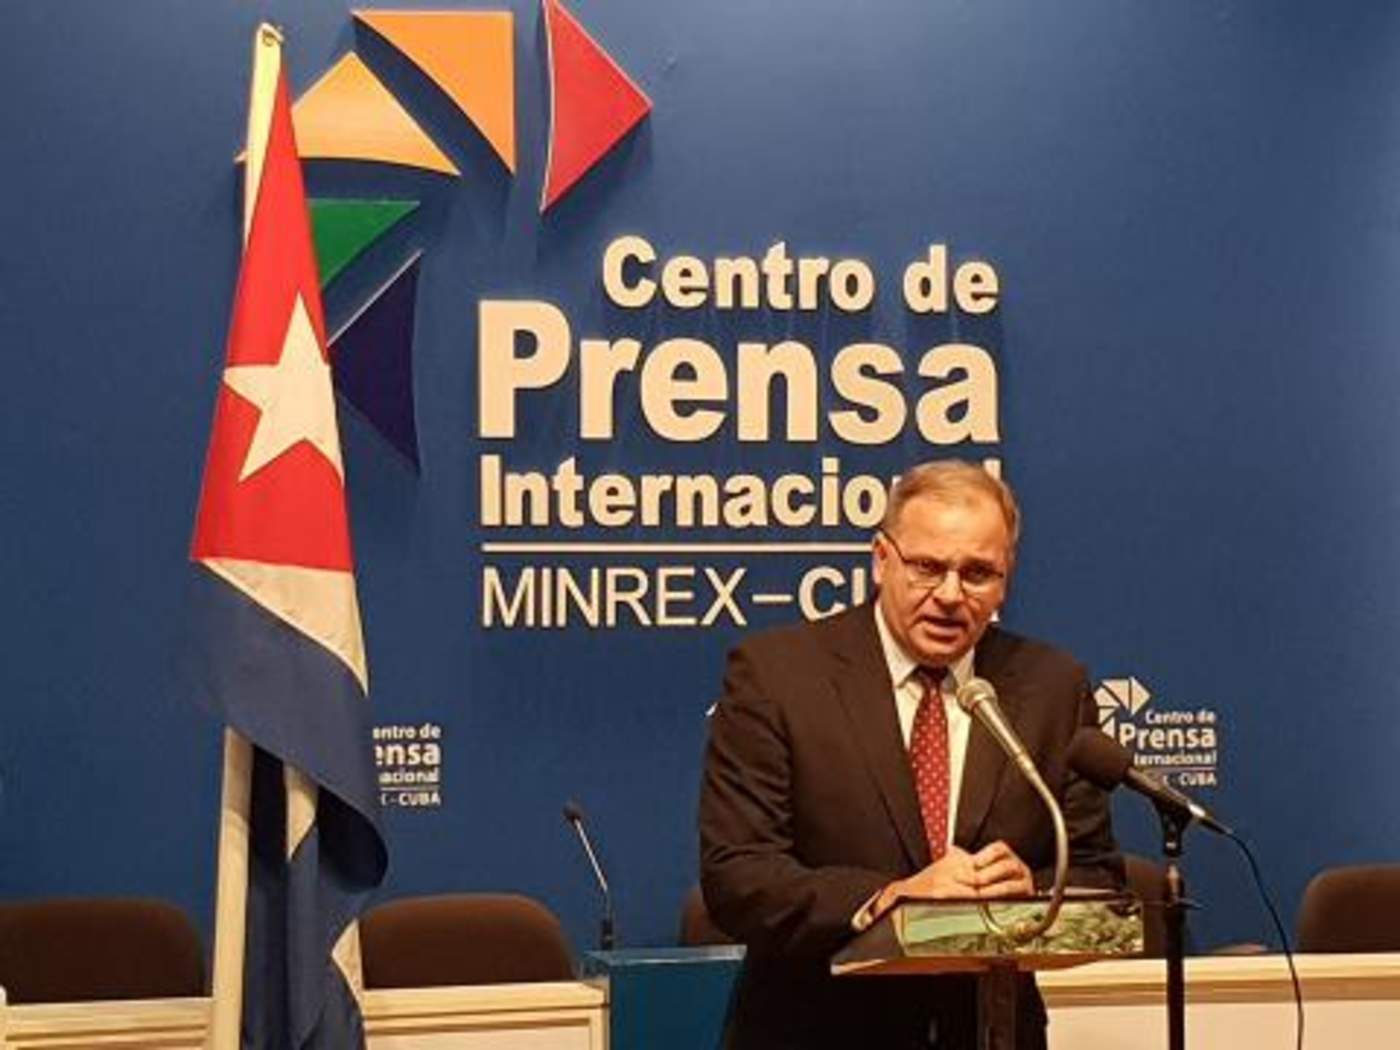 El representante del Ministerio de Exteriores cubano replicó que su Gobierno no reconoce ni reconocerá 'autoridad moral o legal alguna a la OEA ni a ninguno de sus funcionarios y órganos subsidiarios que intenten singularizar a Cuba'. (ESPECIAL)